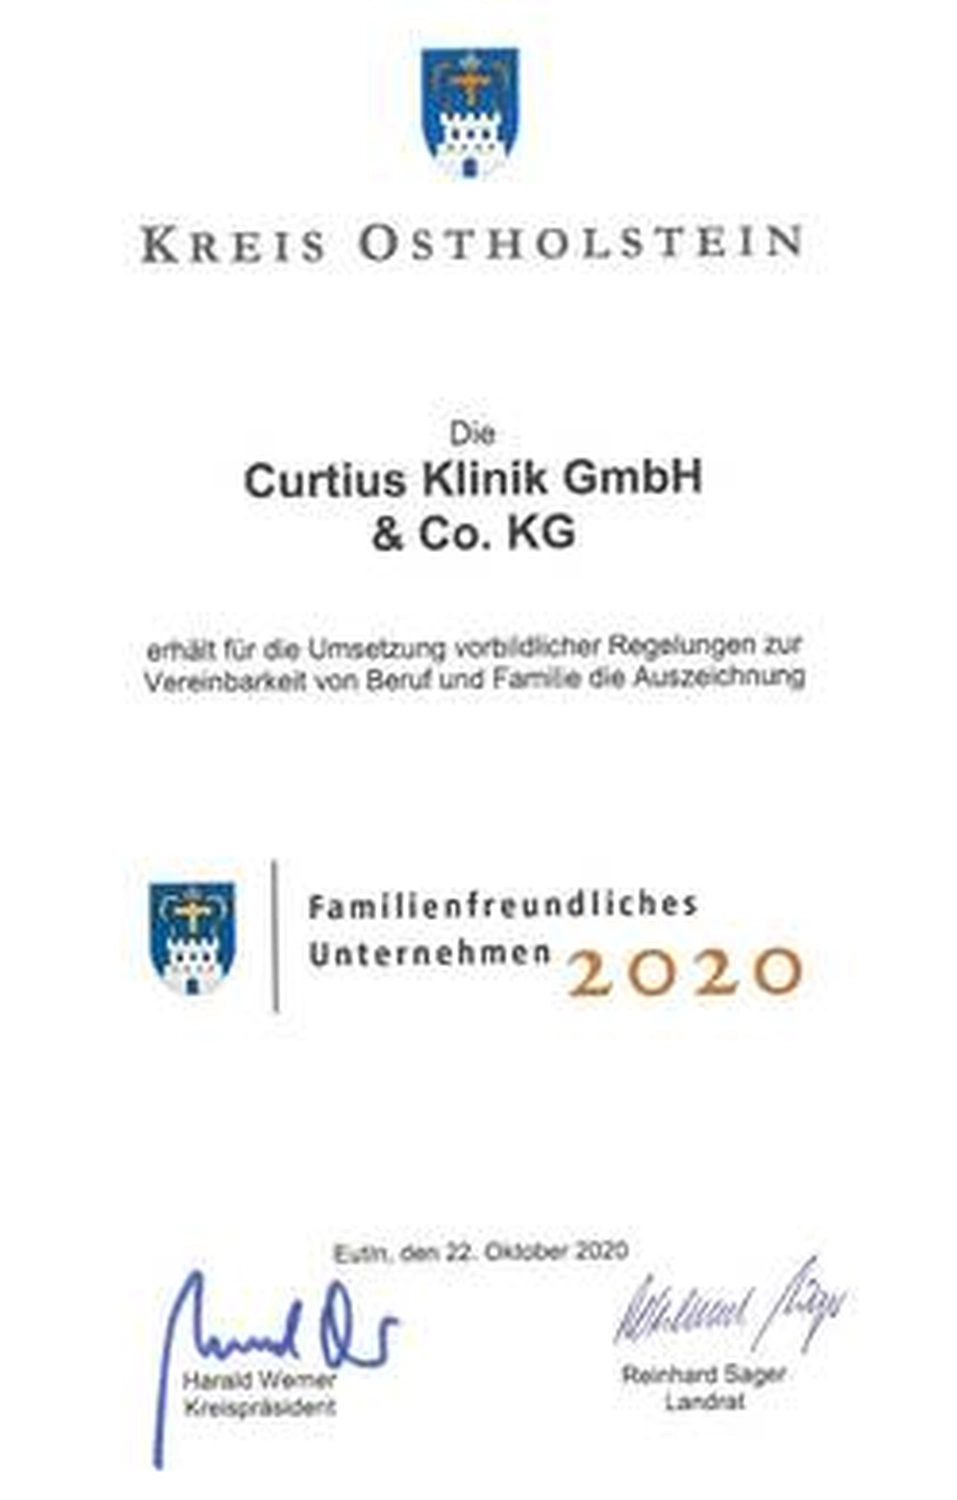 Curtius Klinik wieder zum familienfreundlichen Unternehmen 2020 ausgezeichnet